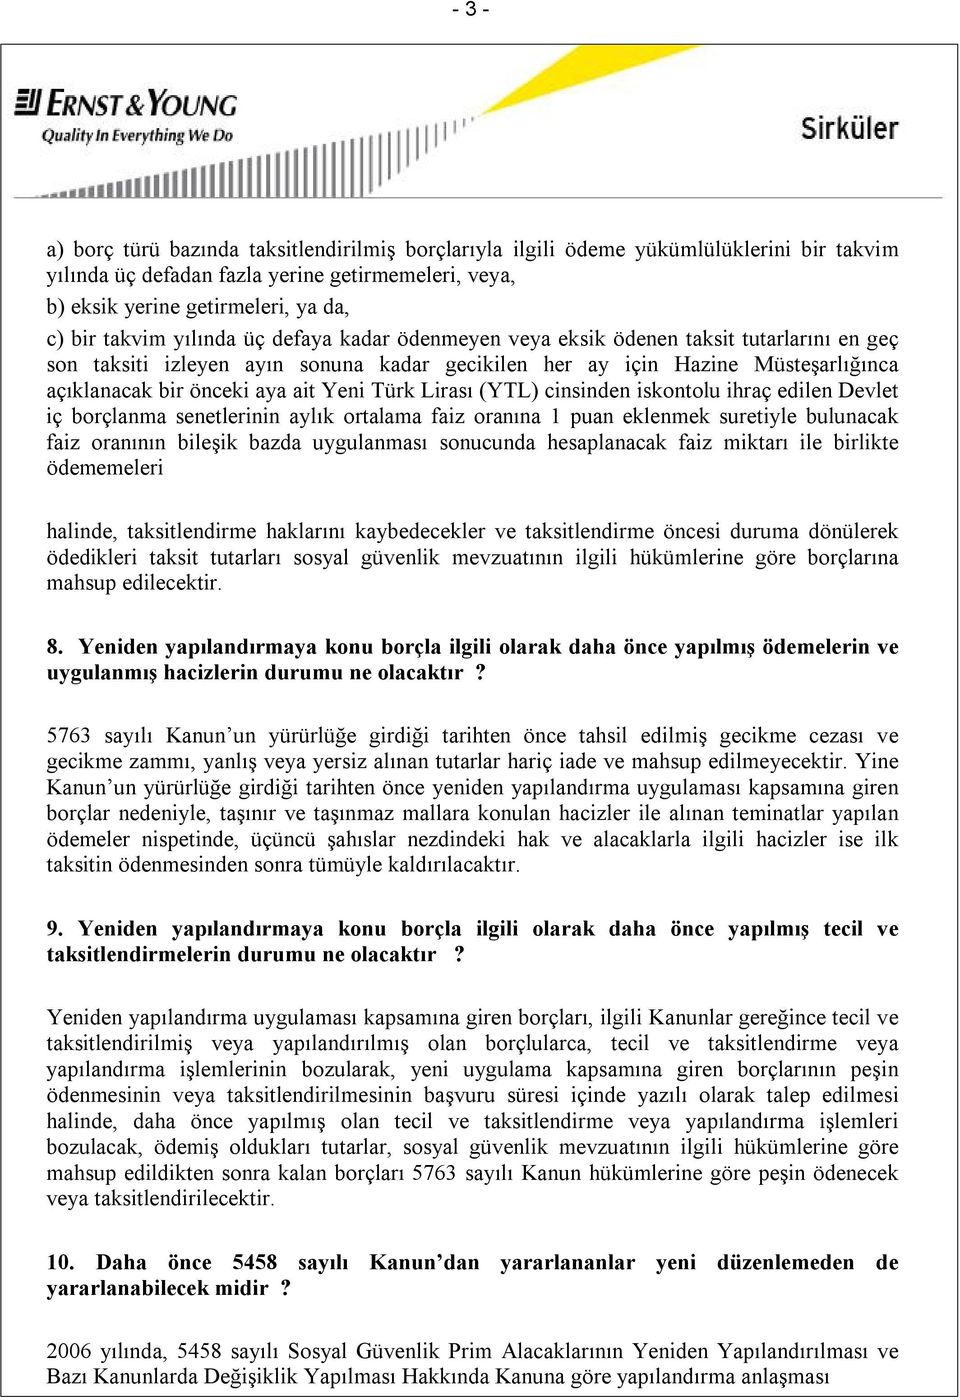 Yeni Türk Lirası (YTL) cinsinden iskontolu ihraç edilen Devlet iç borçlanma senetlerinin aylık ortalama faiz oranına 1 puan eklenmek suretiyle bulunacak faiz oranının bileşik bazda uygulanması